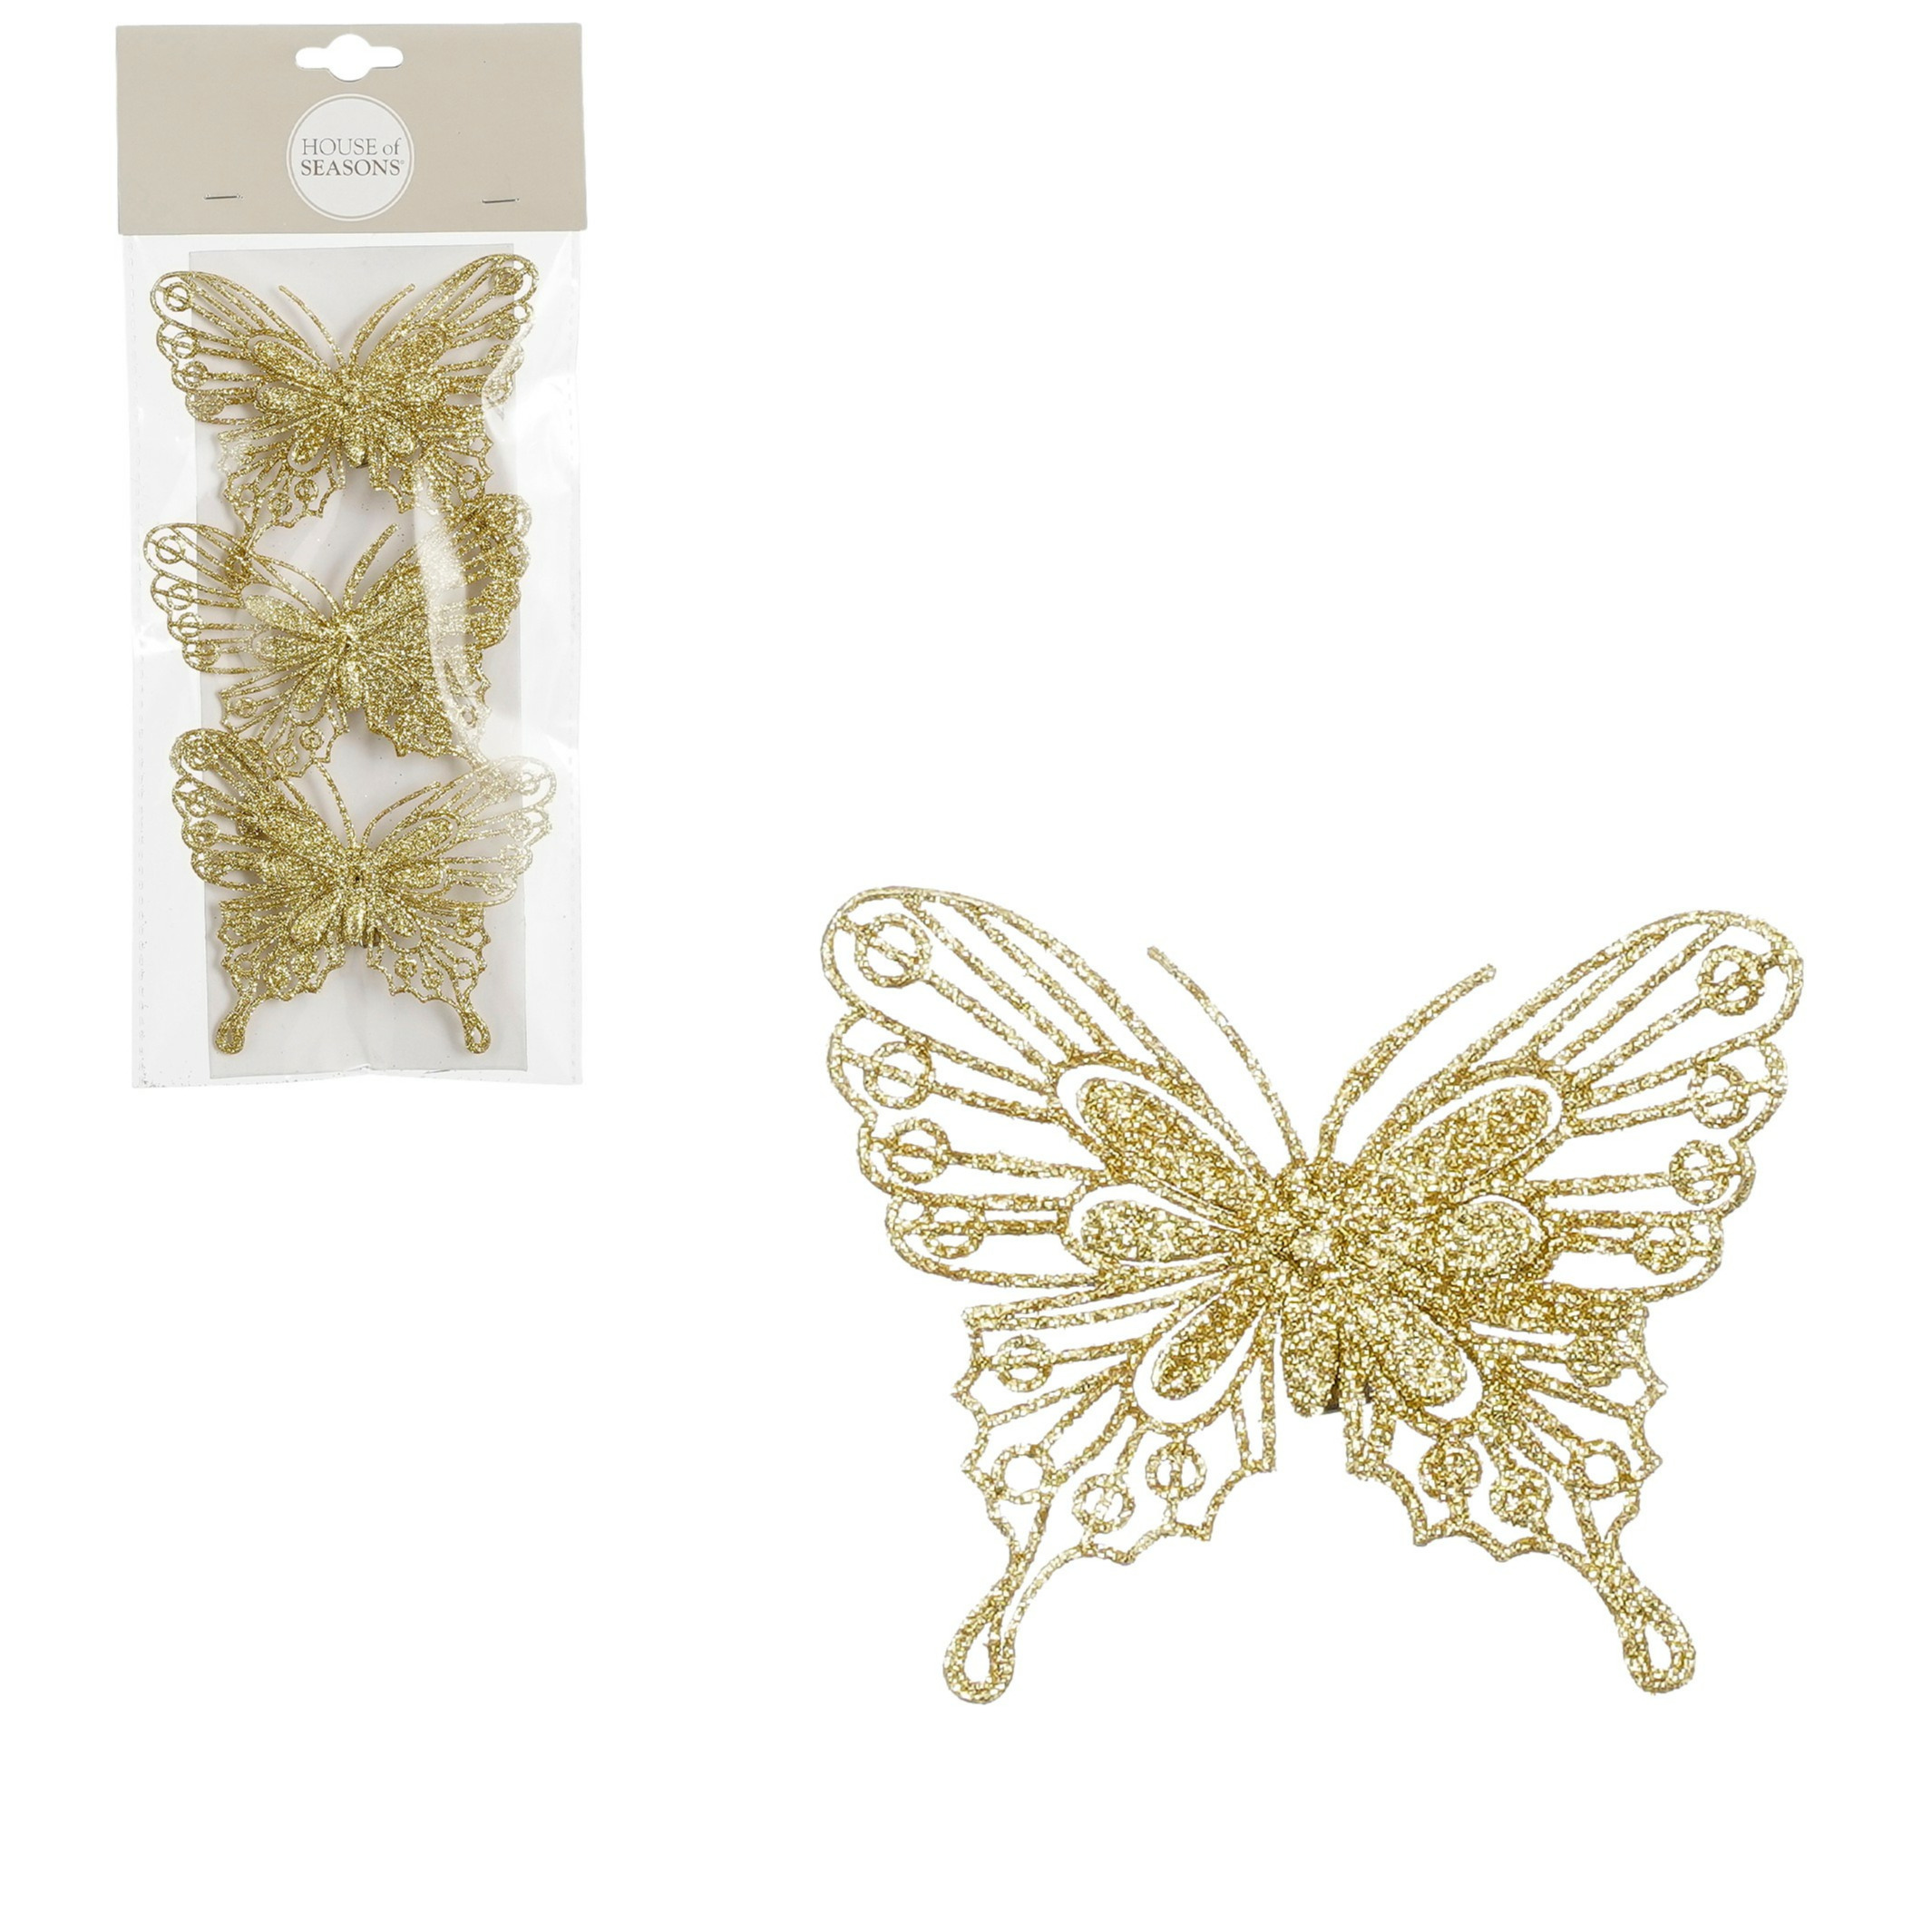 House of Seasons vlinders op clip - 3x stuks - goud glitter - 10 cm